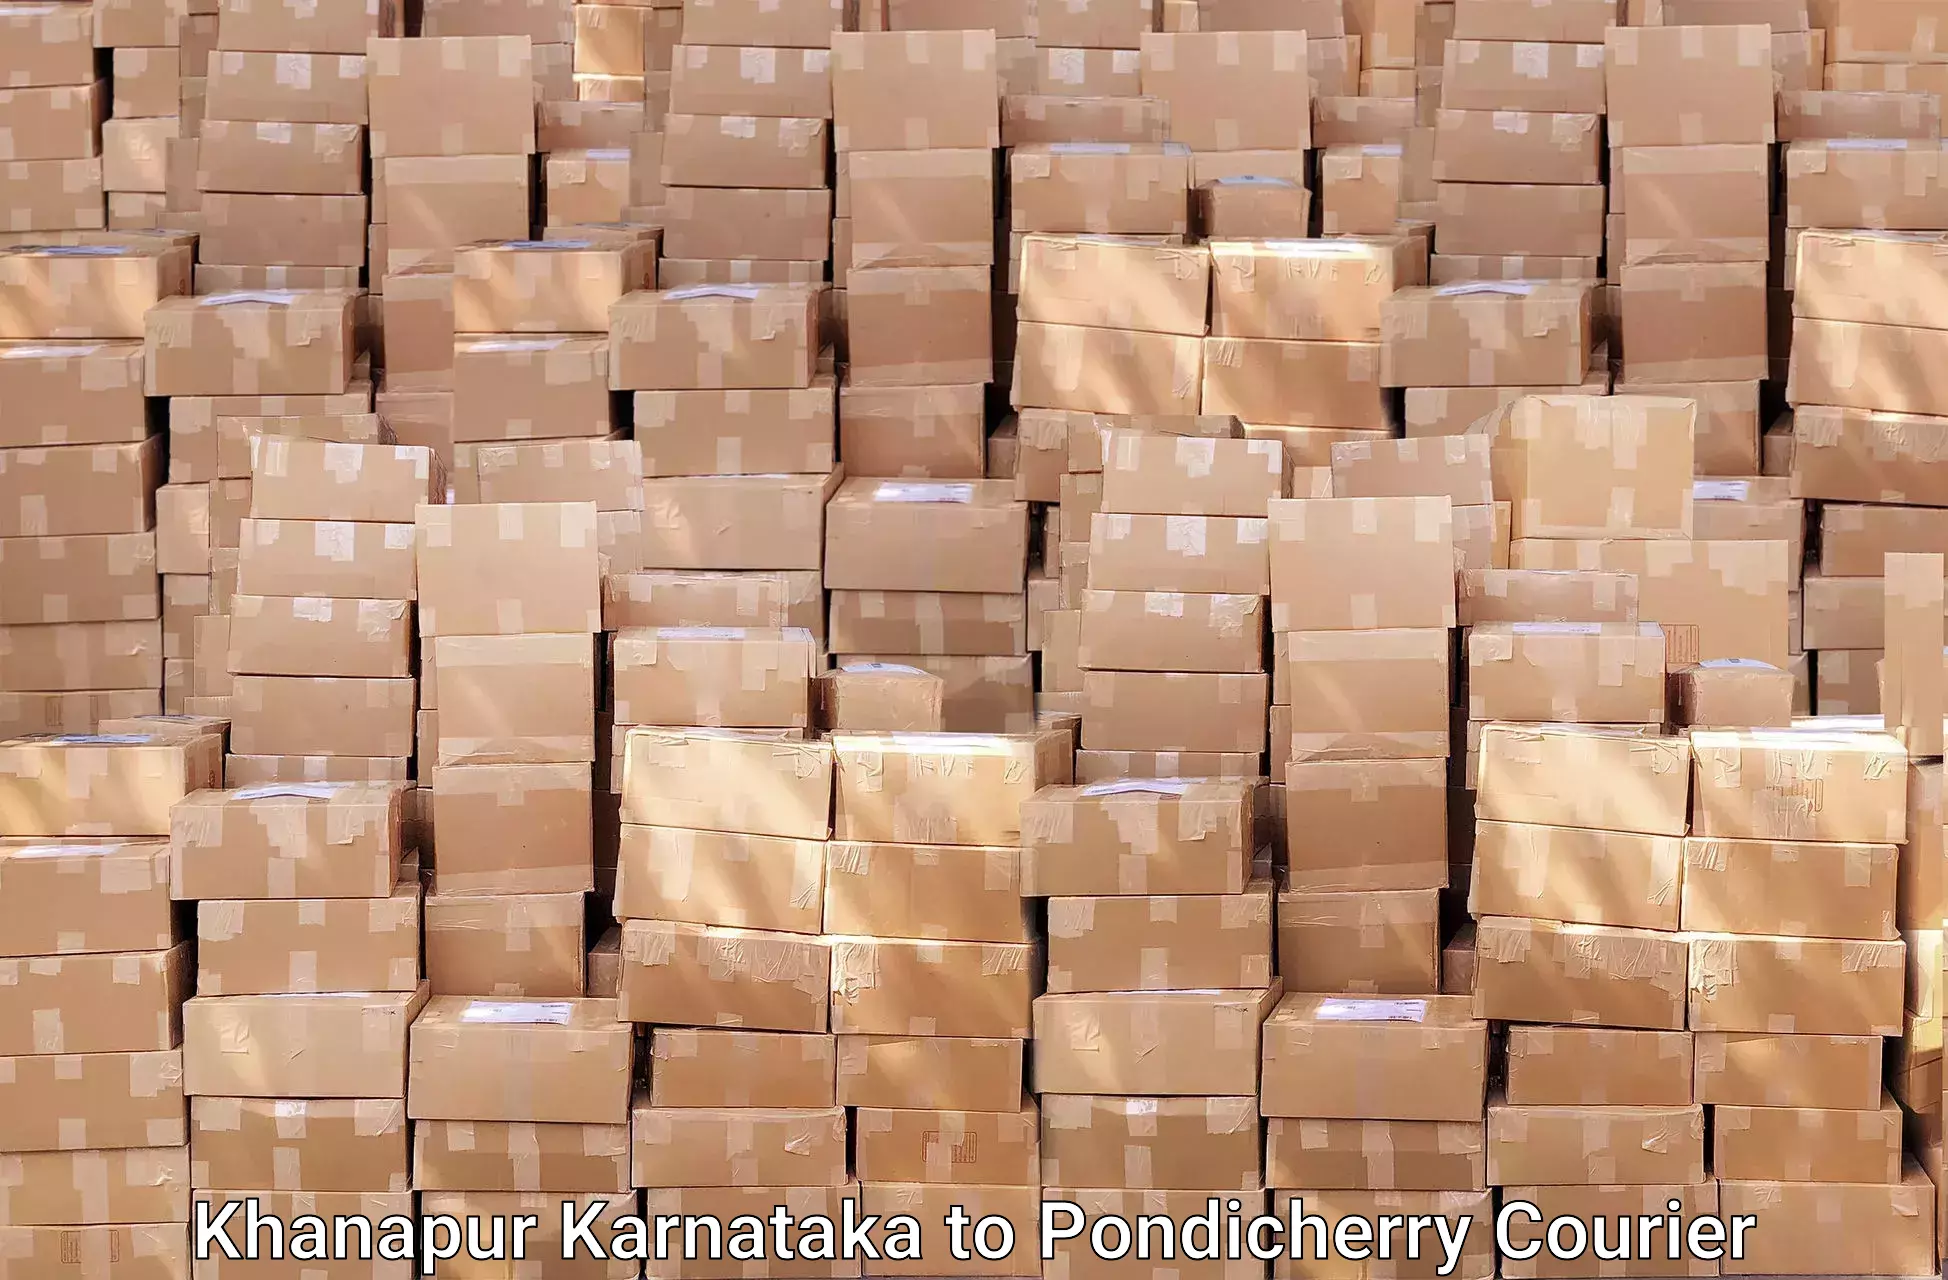 Professional moving assistance Khanapur Karnataka to Metttupalayam